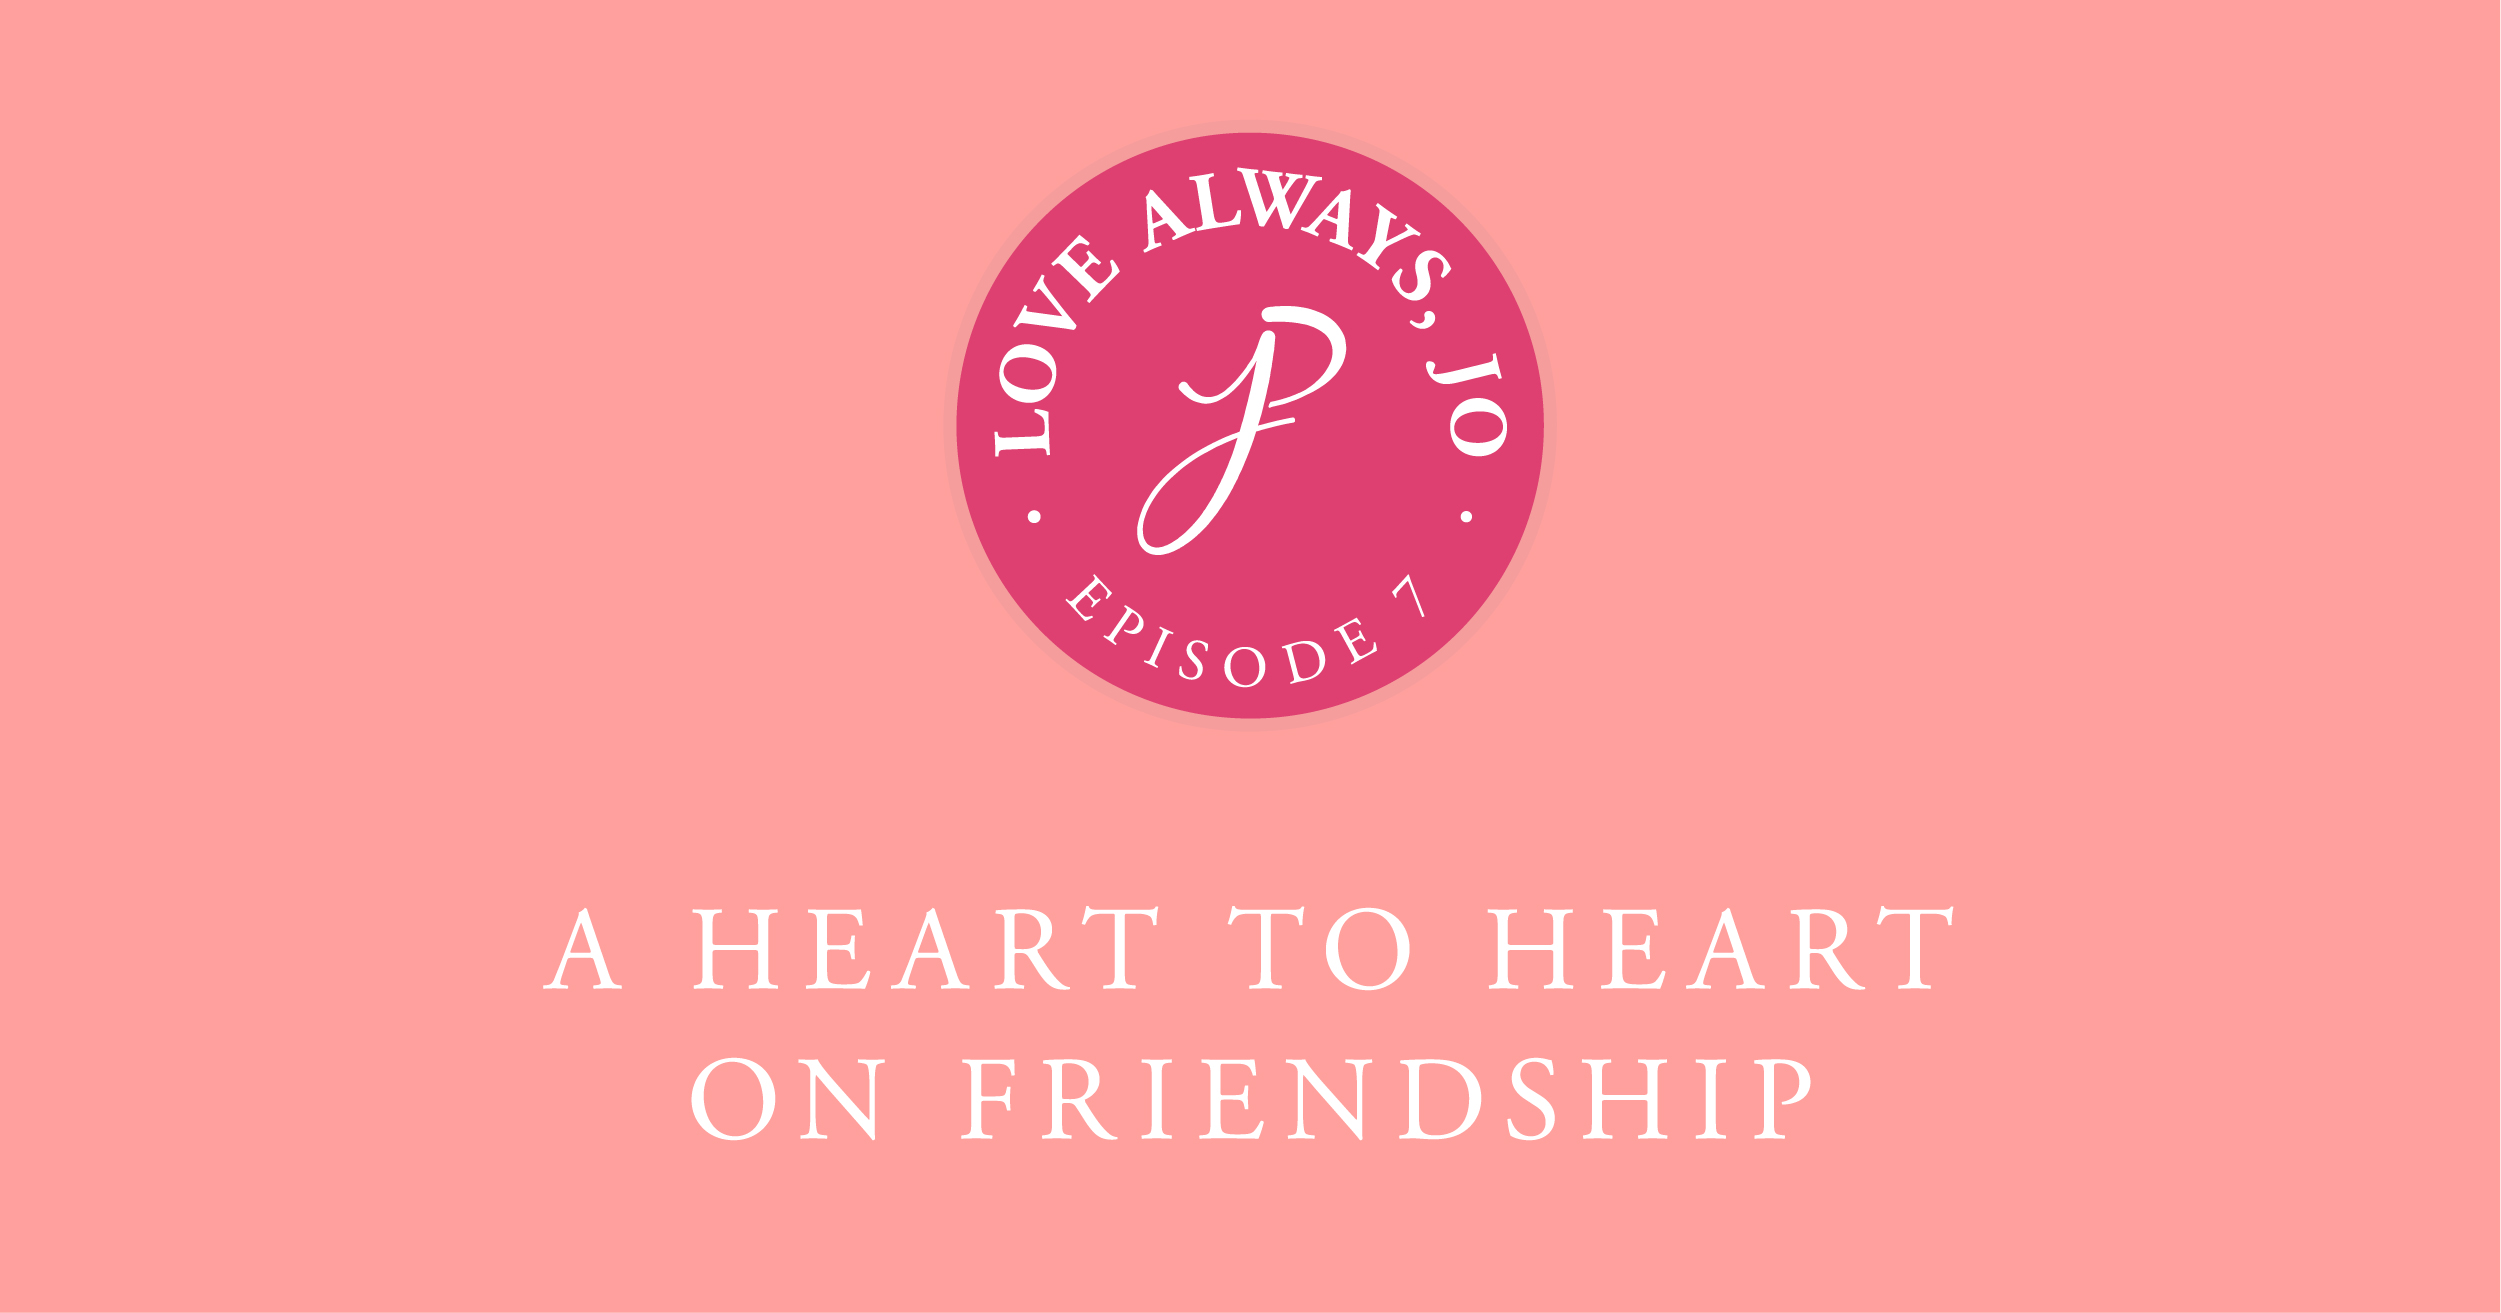 Love Always Jo Episode 77 Heart to Heart on Friendship